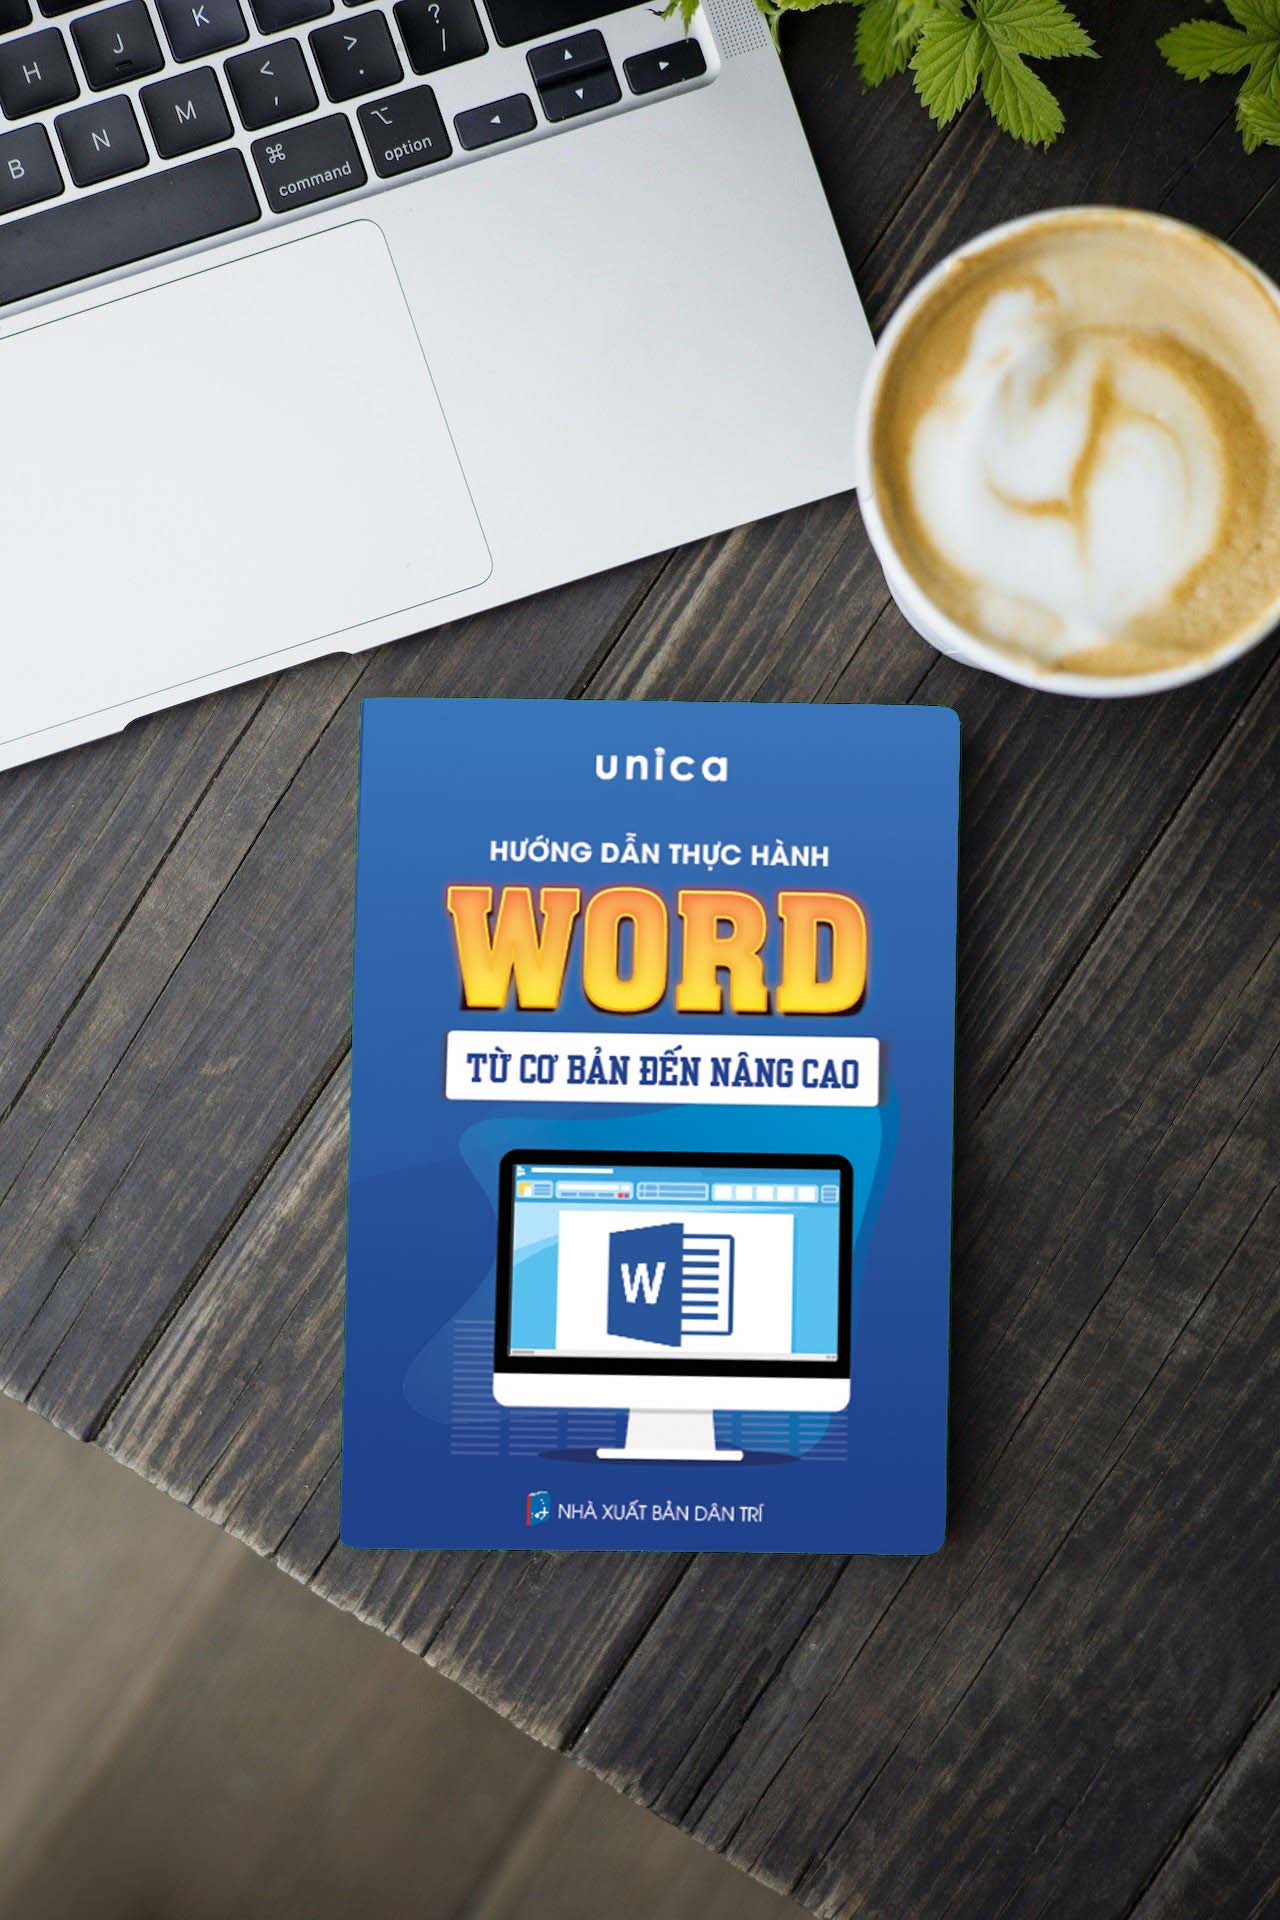 Sách Word Tin học văn phòng Unica, Hướng dẫn thực hành từ cơ bản đến nâng cao, in màu chi tiết, TẶNG video bài giảng